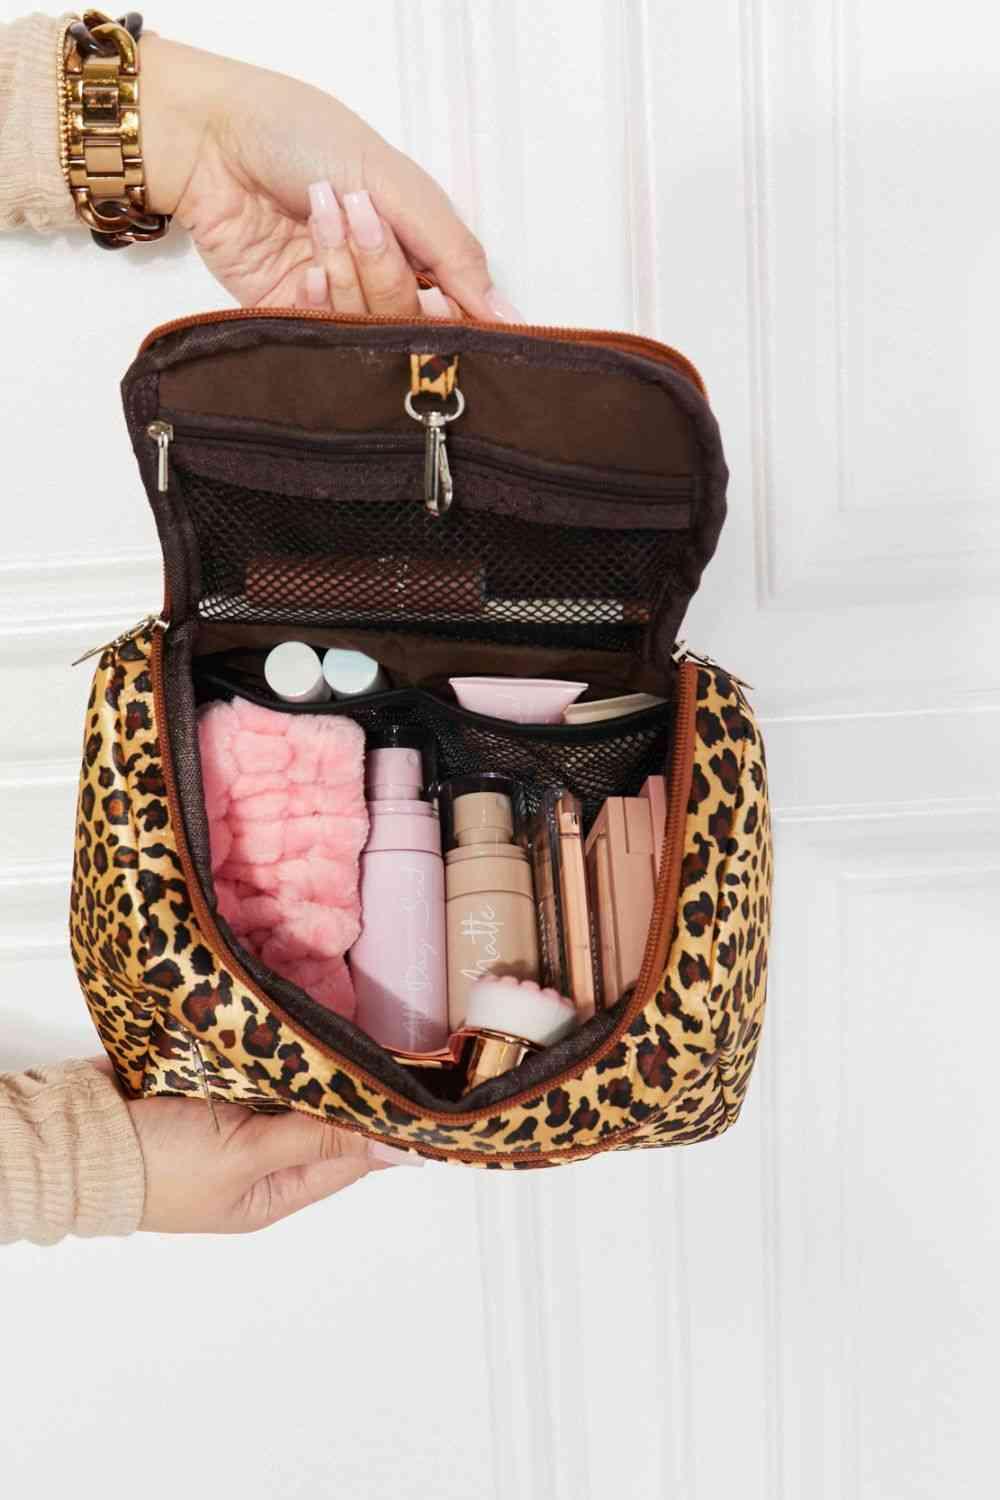 Printed Makeup Bag with Strap - Closet of Ren